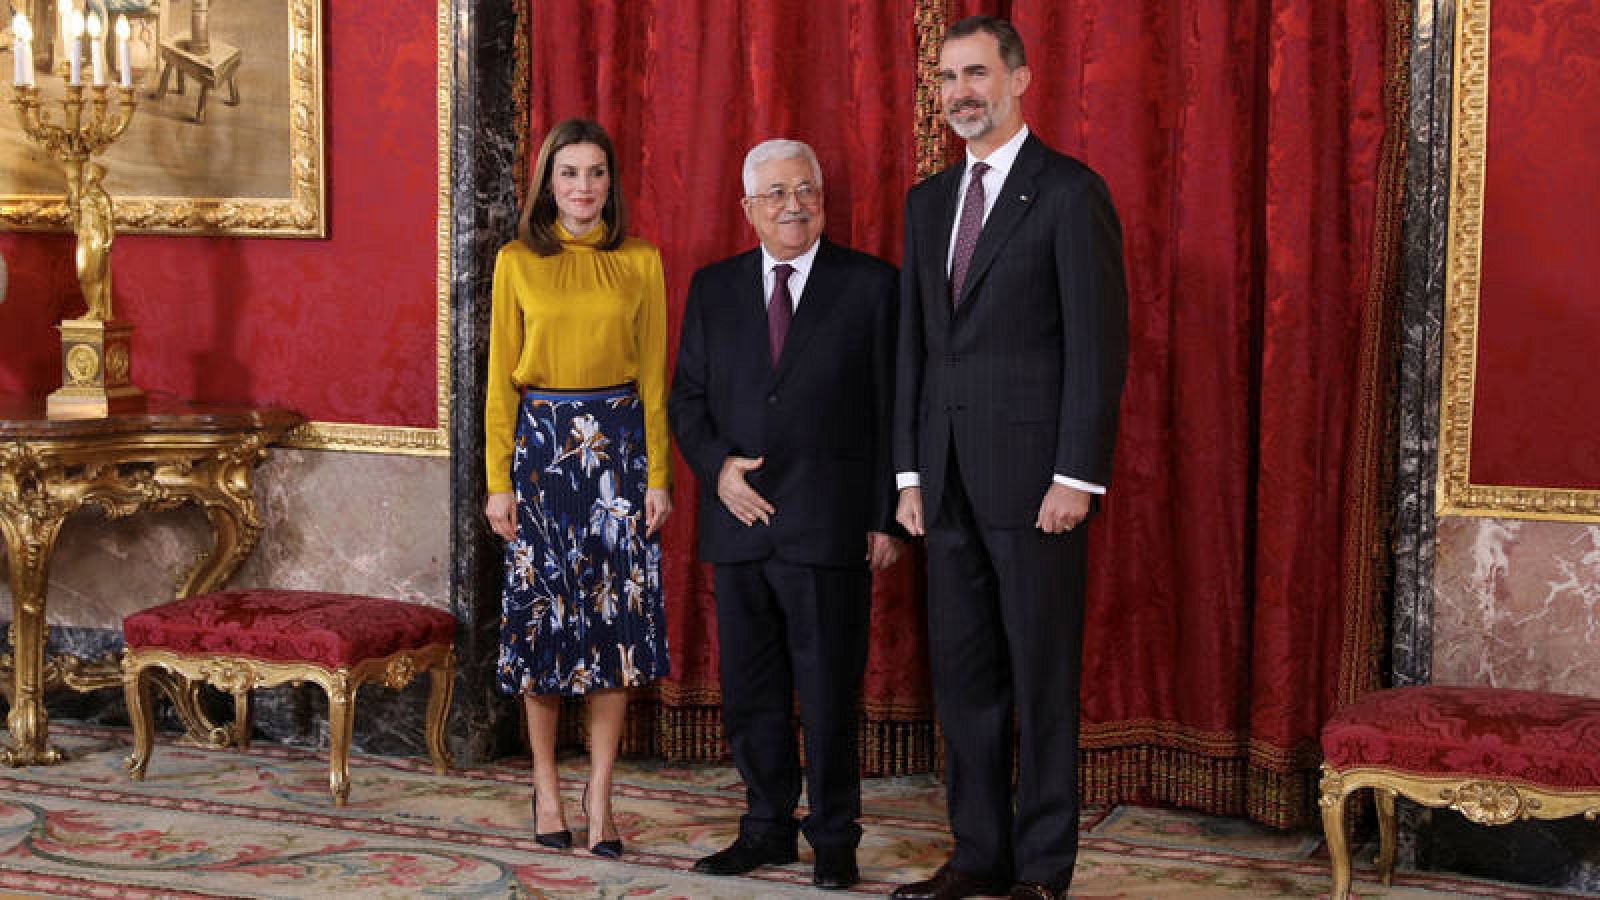  El presidente palestino junto con los reyes antes del almuerzo en el Palacio Real